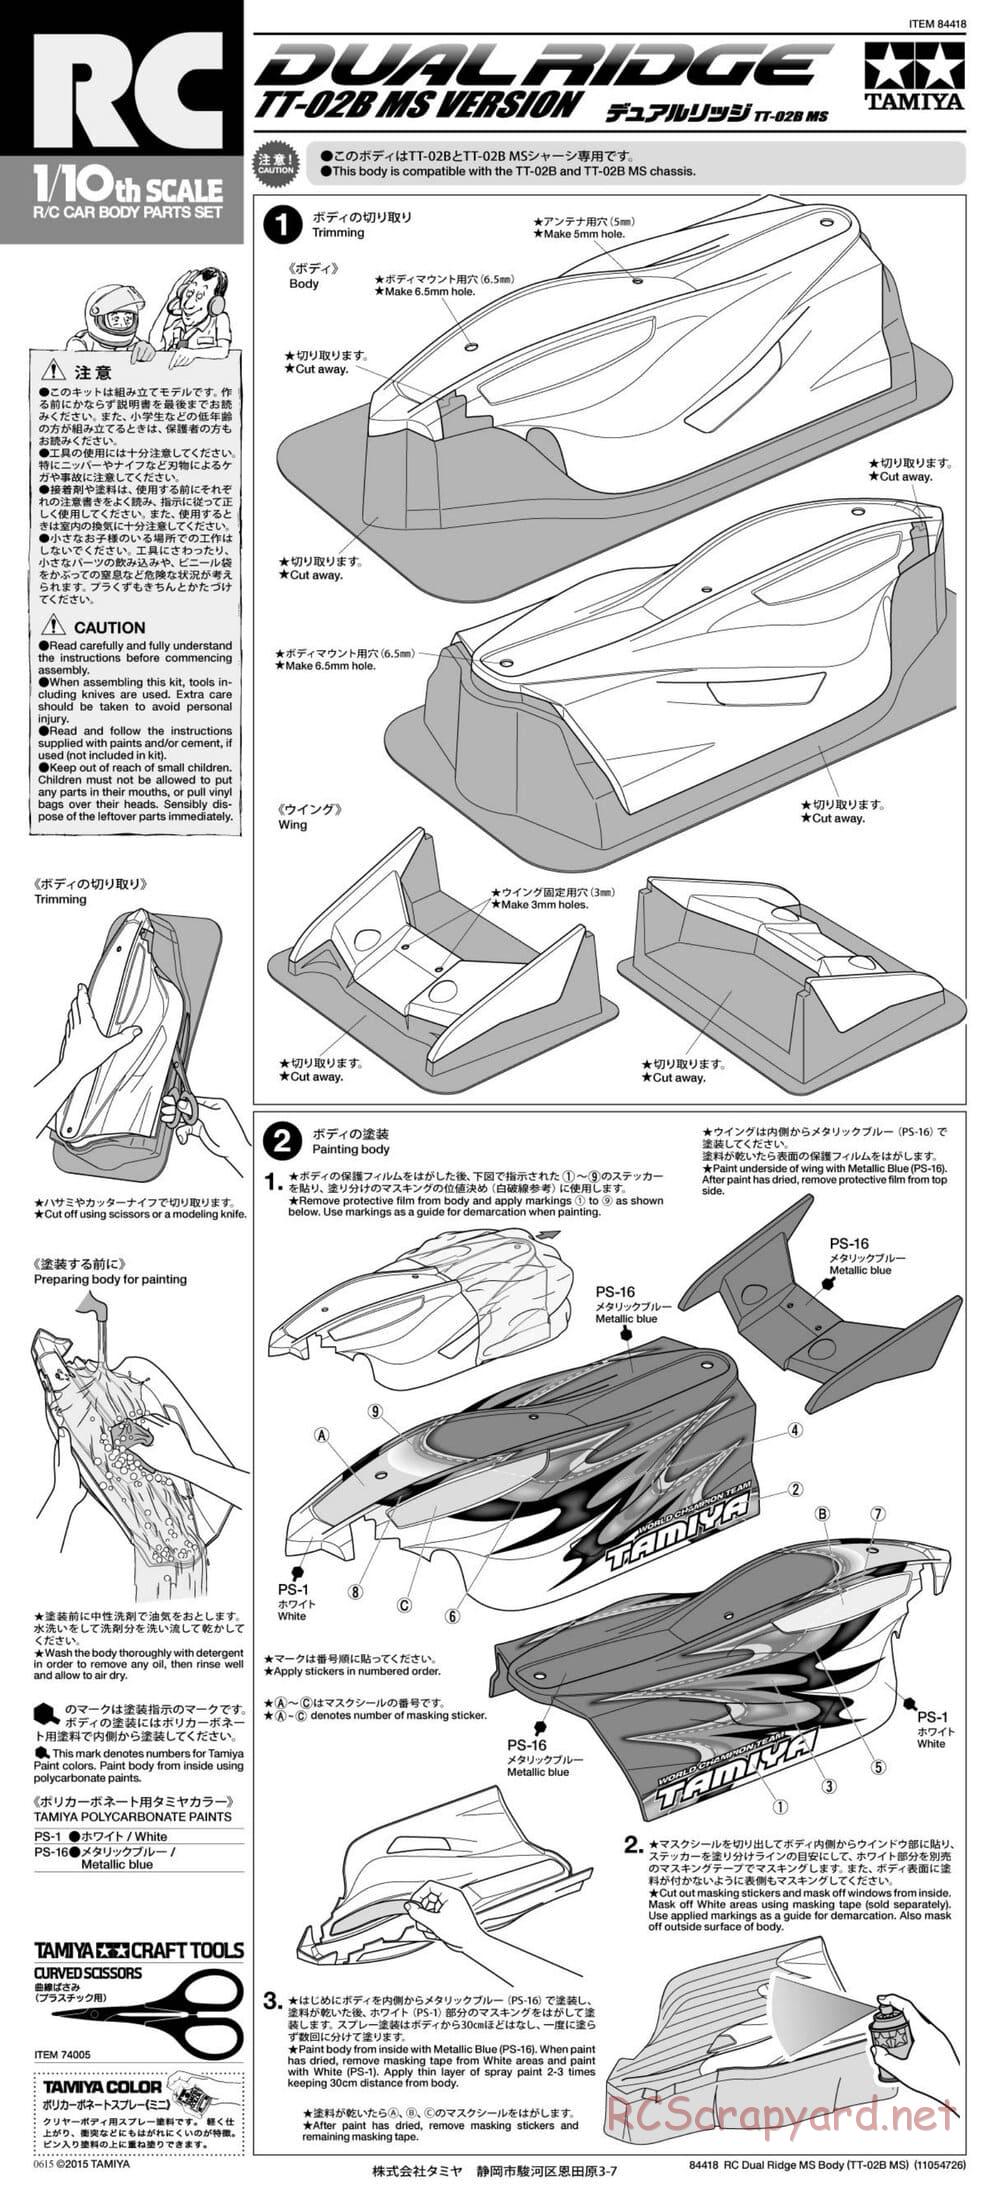 Tamiya - TT-02B MS Chassis - Manual - Page 25